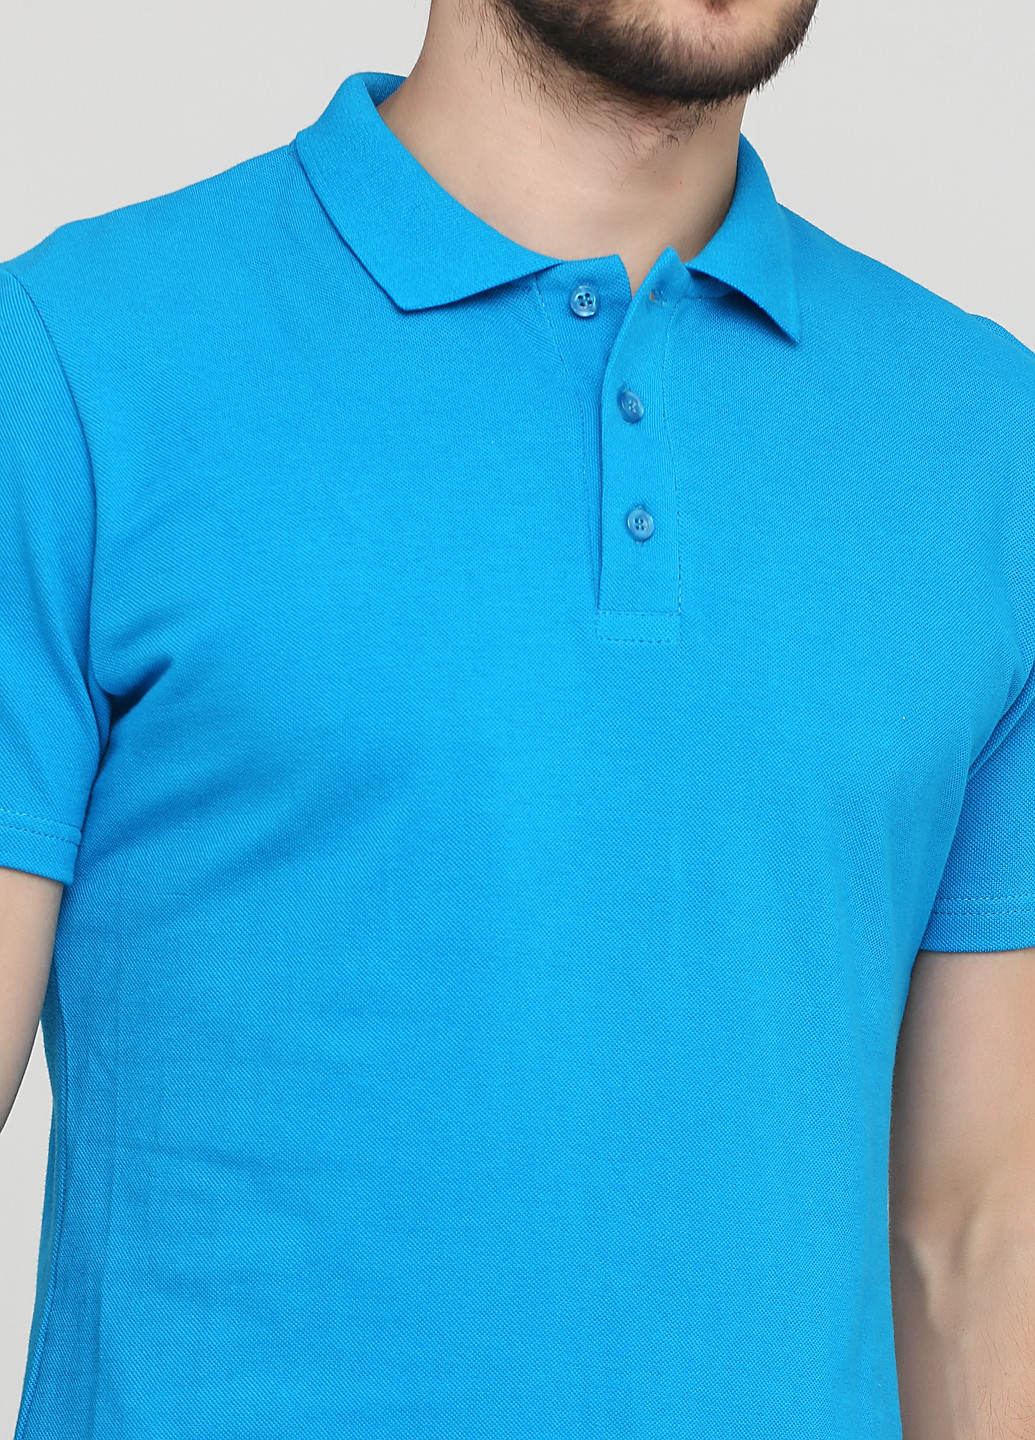 Бирюзовая футболка-чоловіча футболка поло 100% бавовна синьо-бірюзова для мужчин Melgo однотонная